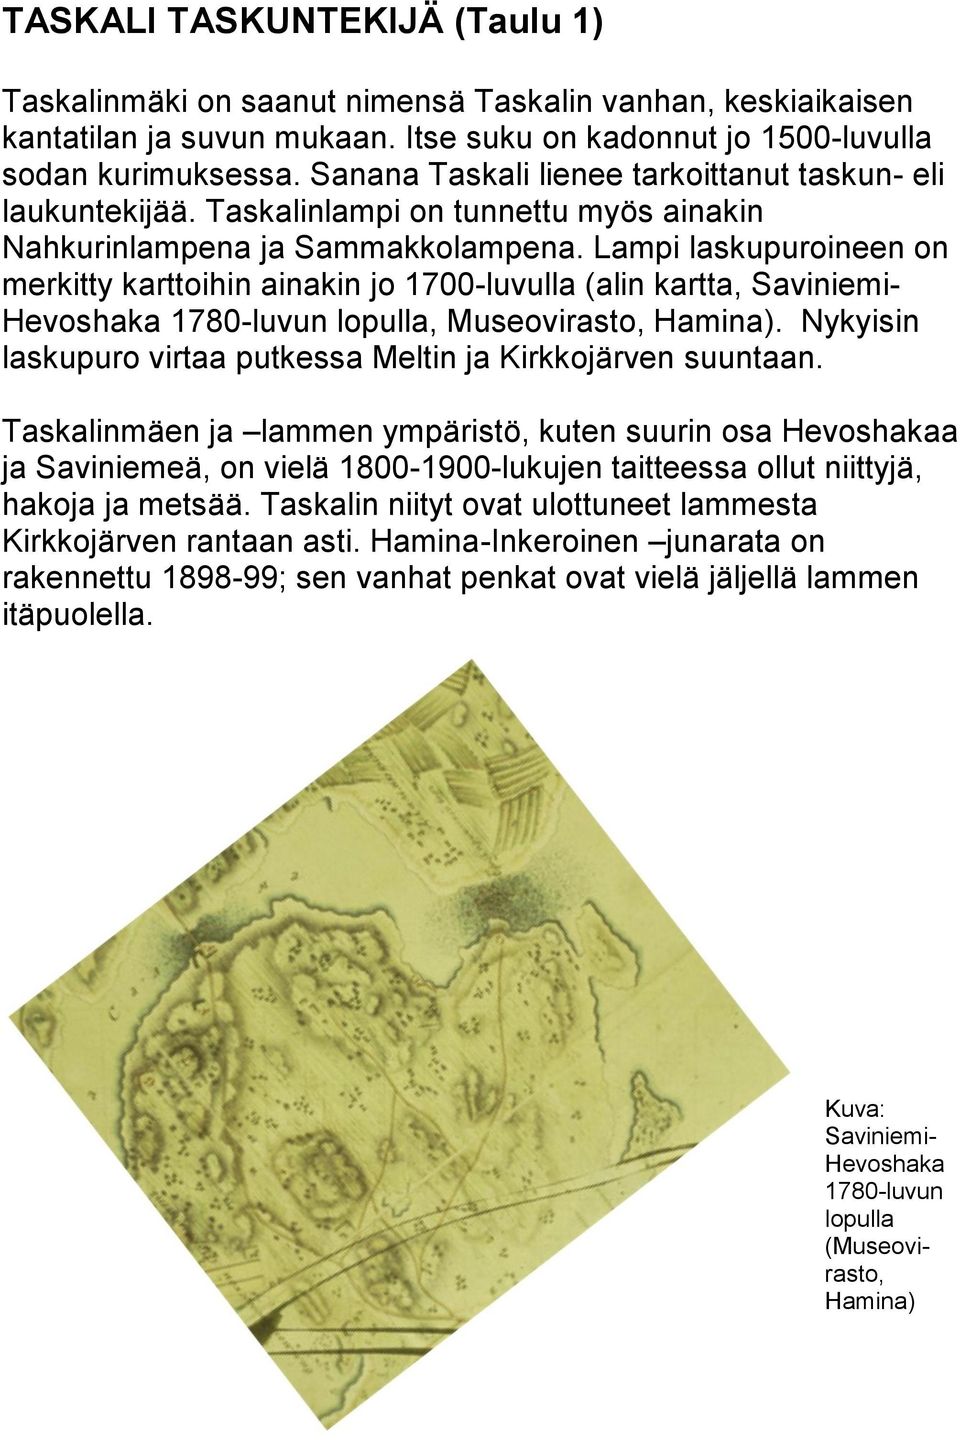 Lampi laskupuroineen on merkitty karttoihin ainakin jo 1700-luvulla (alin kartta, Saviniemi- Hevoshaka 1780-luvun lopulla, Museovirasto, Hamina).